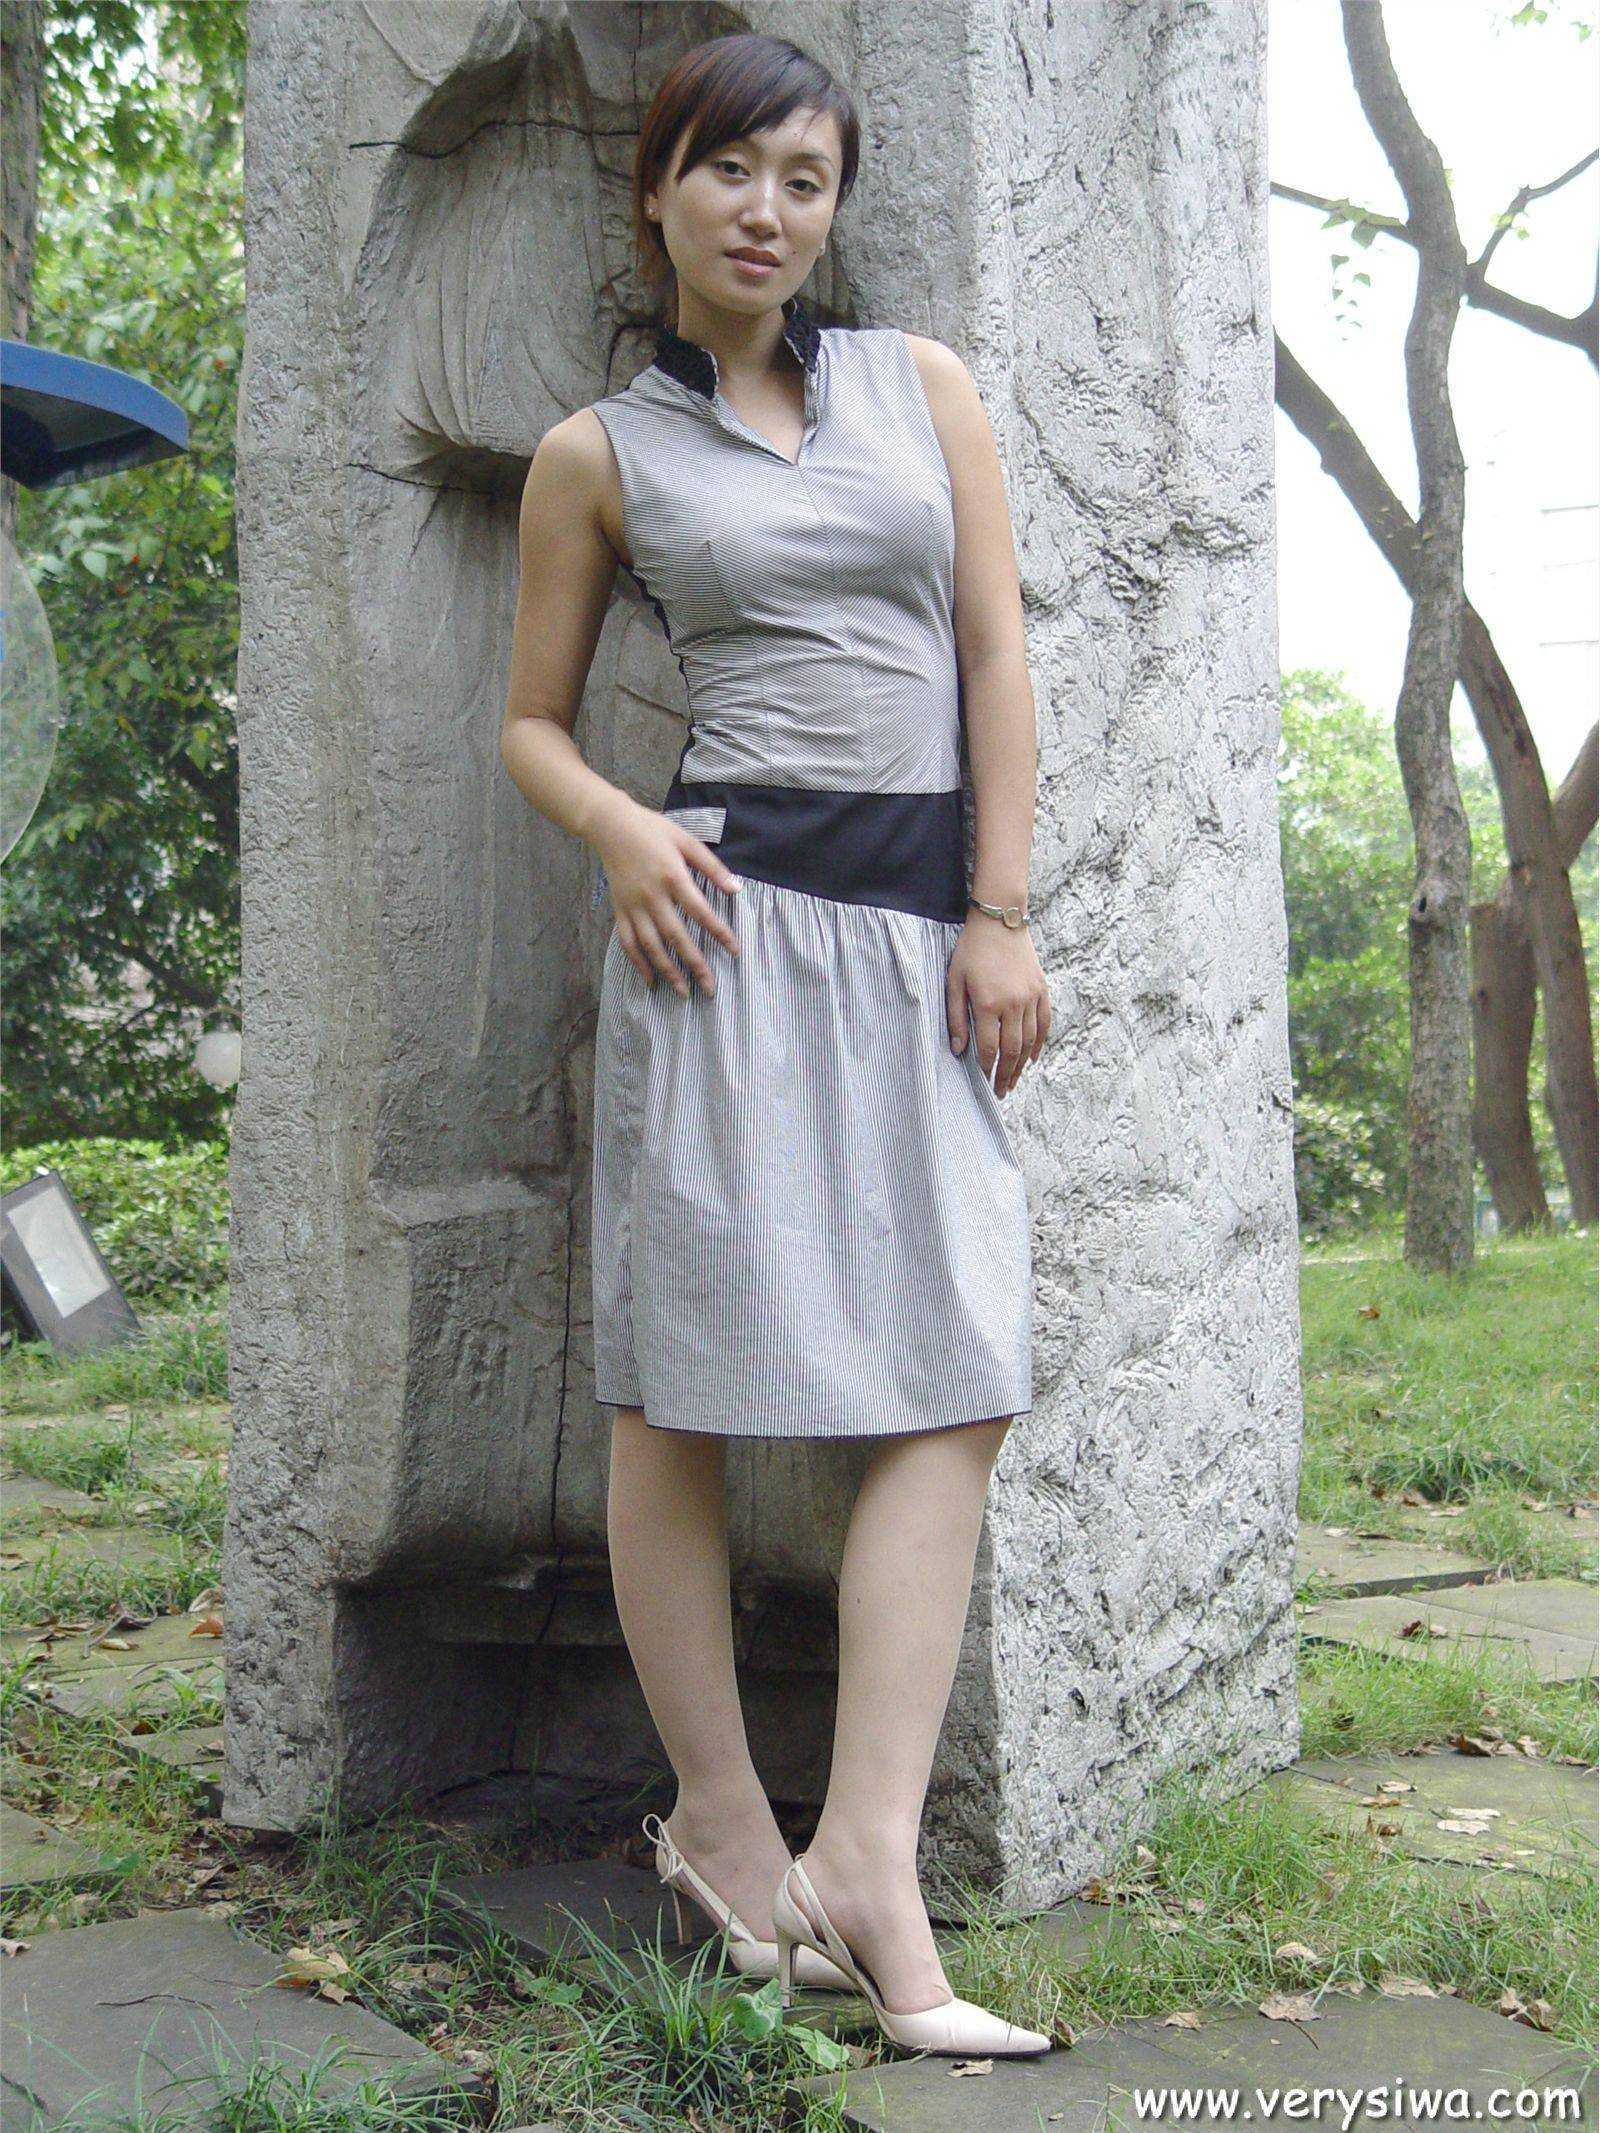 [zhonggaoyi] P005 (Weiwei) sexy stockings beauty picture package download